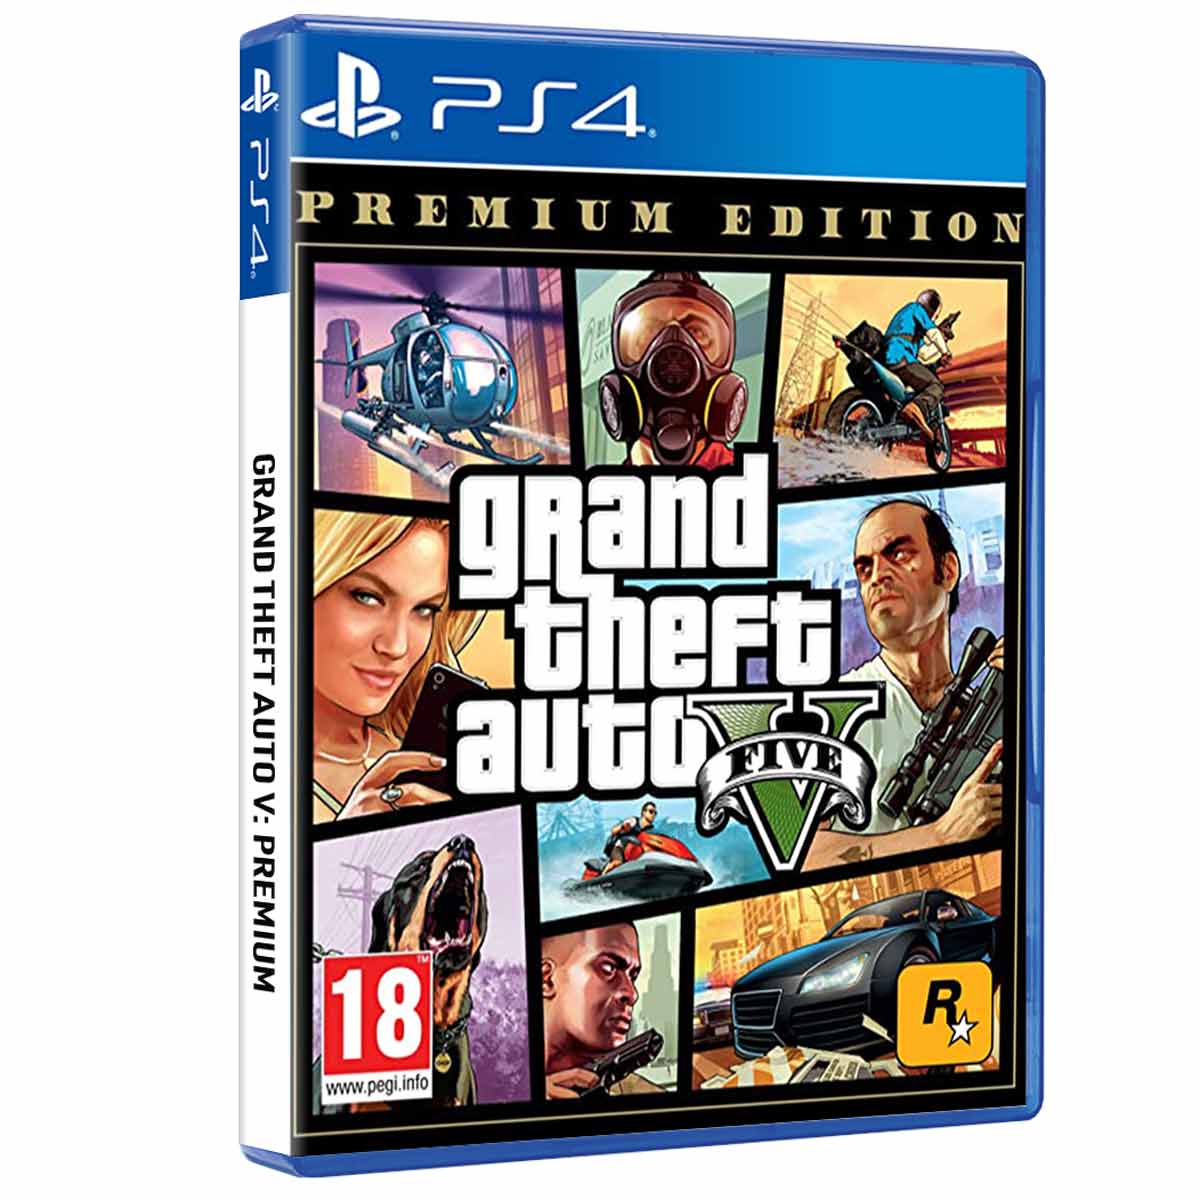 Grand Theft Auto V (GTA V) Premium Edition PS4 - ShopTo.net